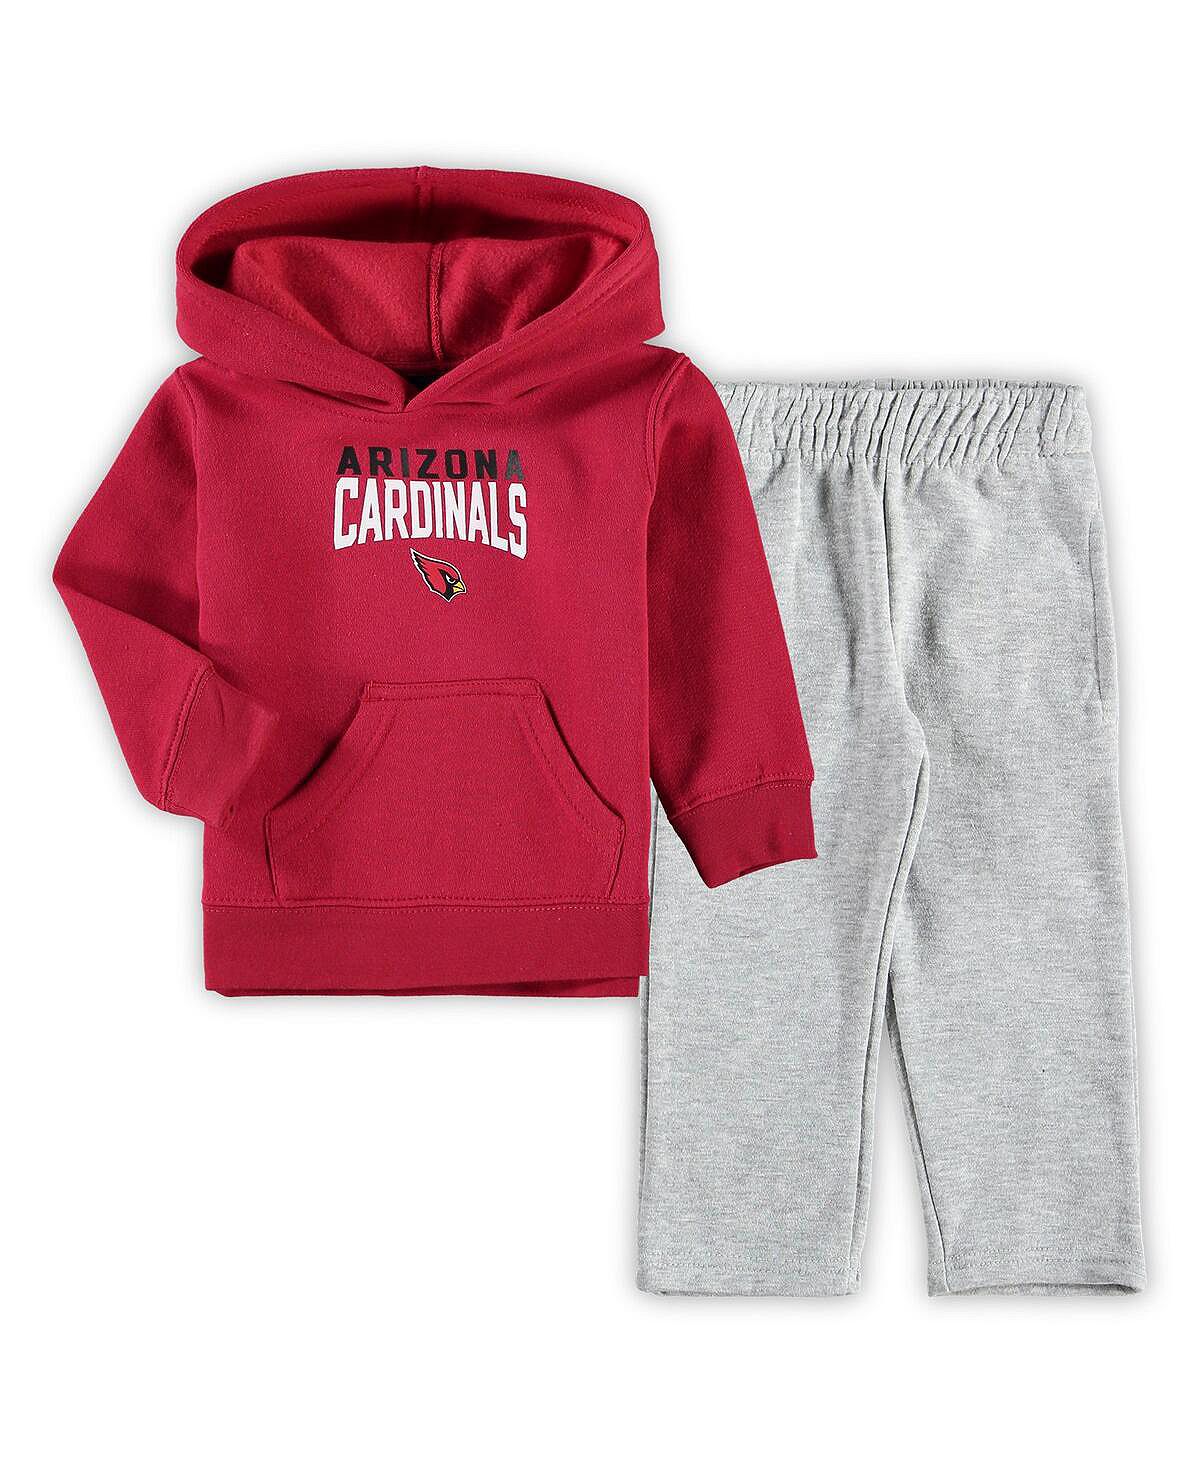 Комплект из расклешенного пуловера с капюшоном и спортивных штанов для мальчиков Toddler Boys Cardinal, серого цвета Arizona Cardinals Outerstuff